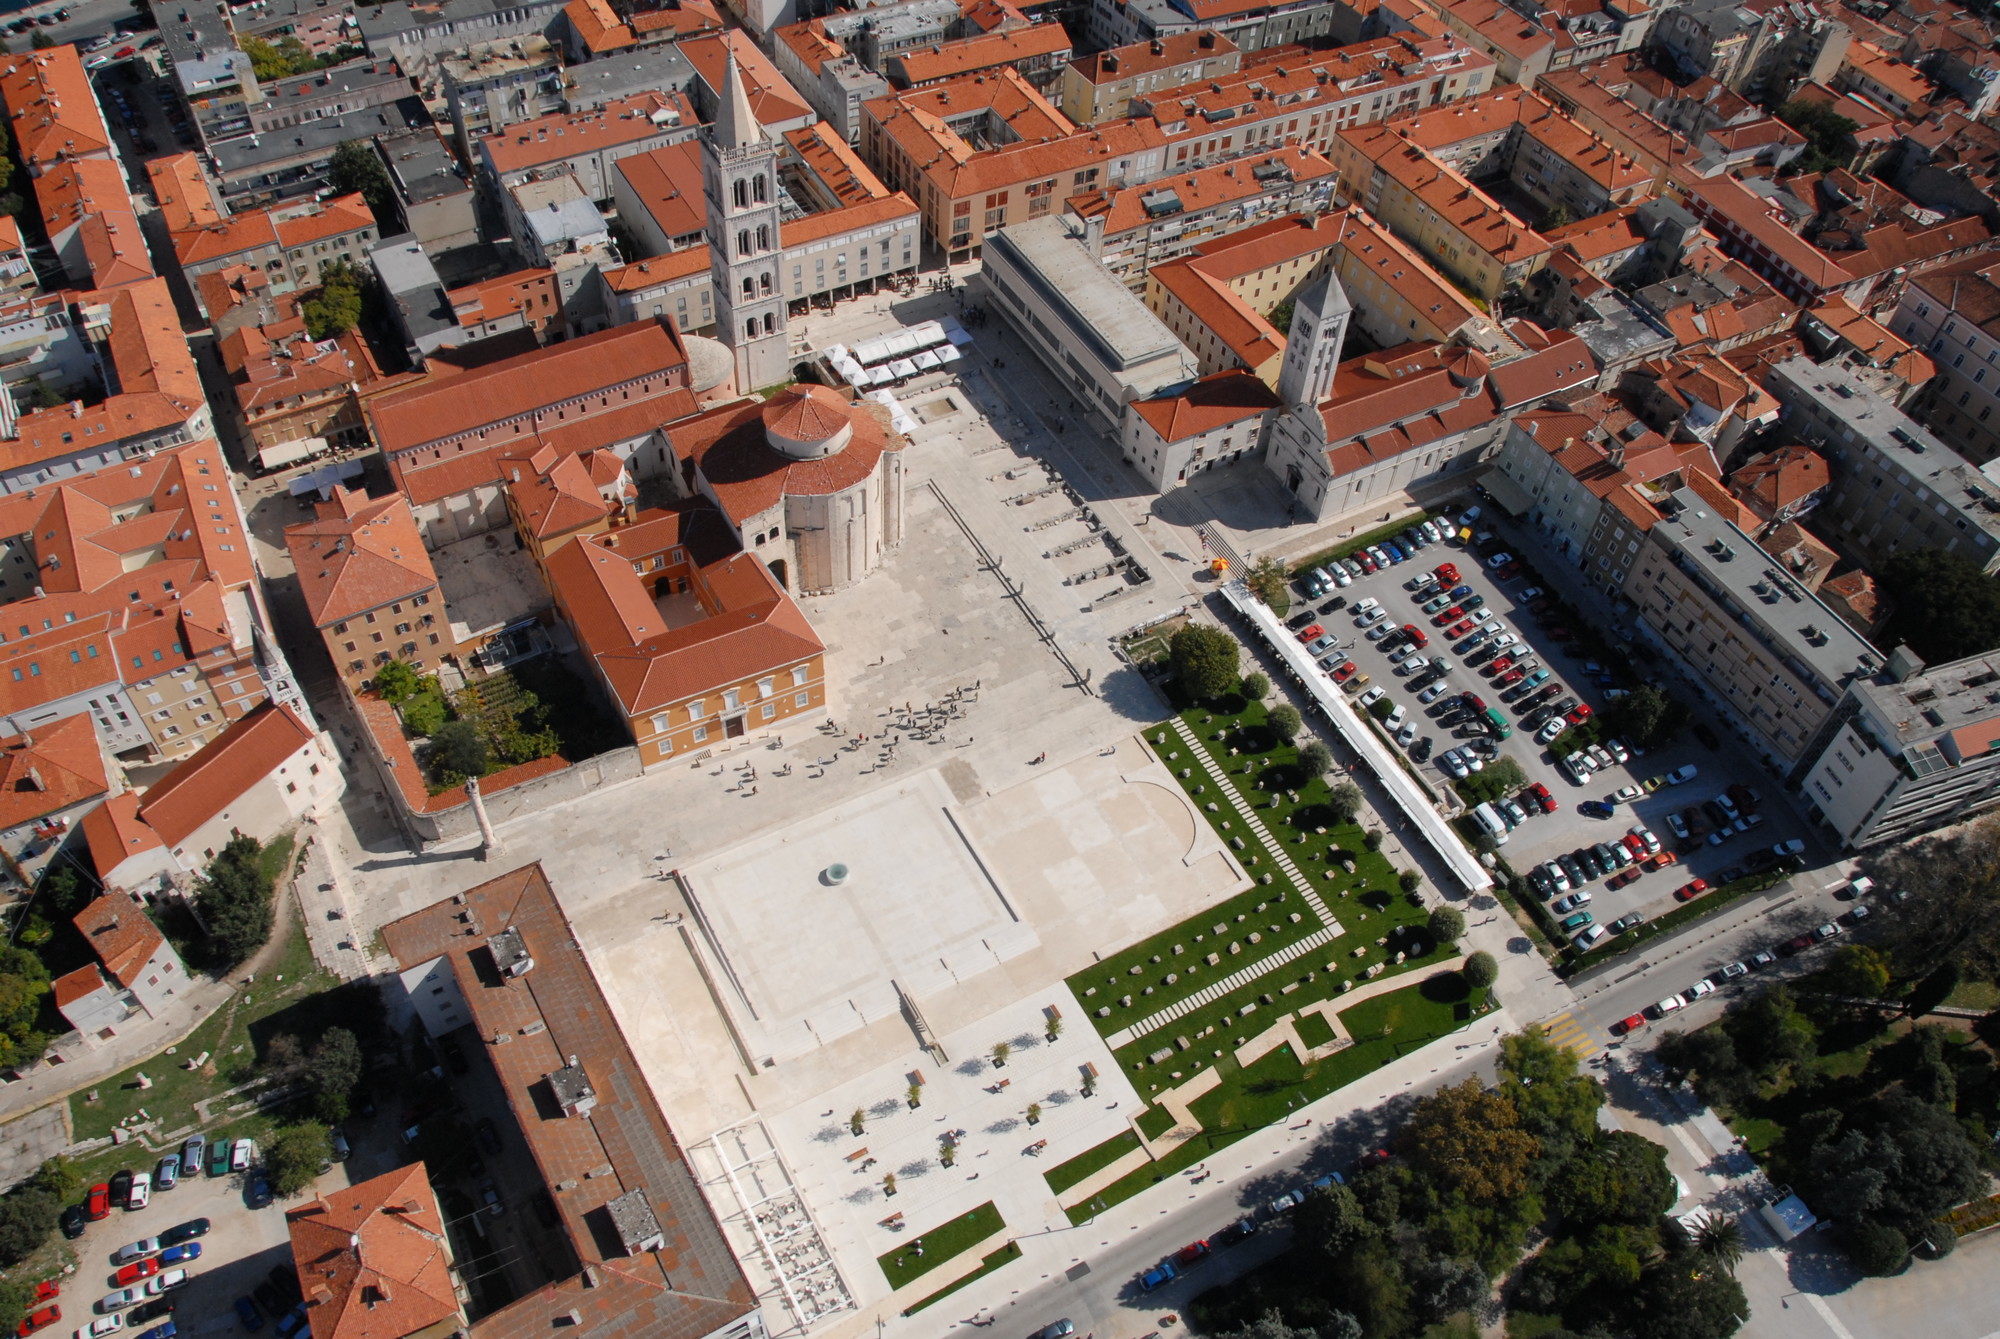 Zadar Architecture